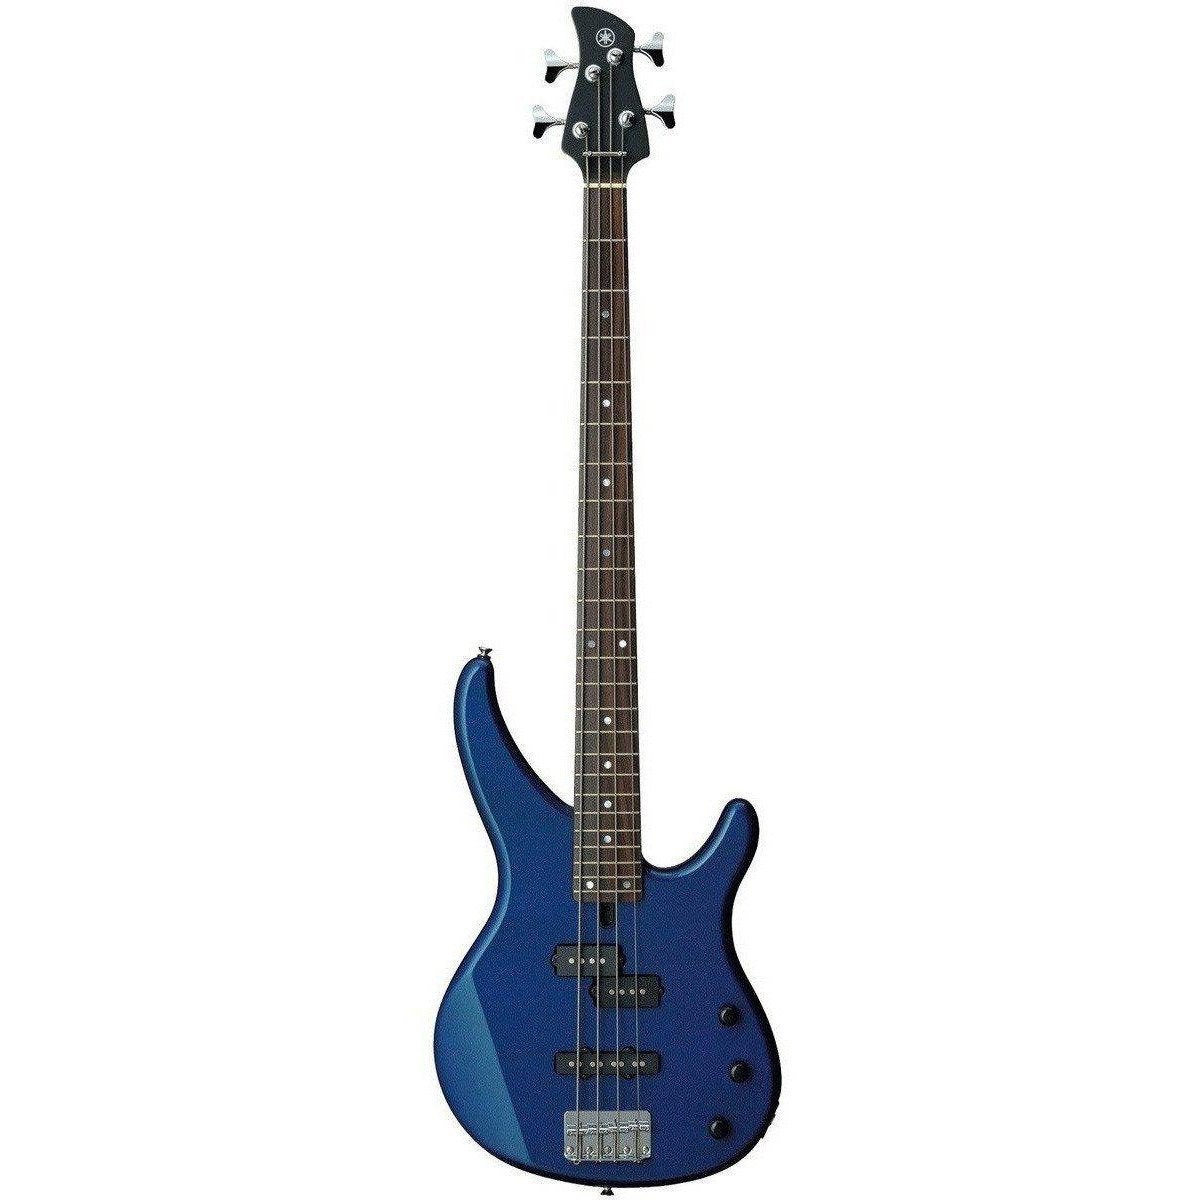 Yamaha TRBX174 Bass Guitar-Dark Blue Metallic-Andy's Music